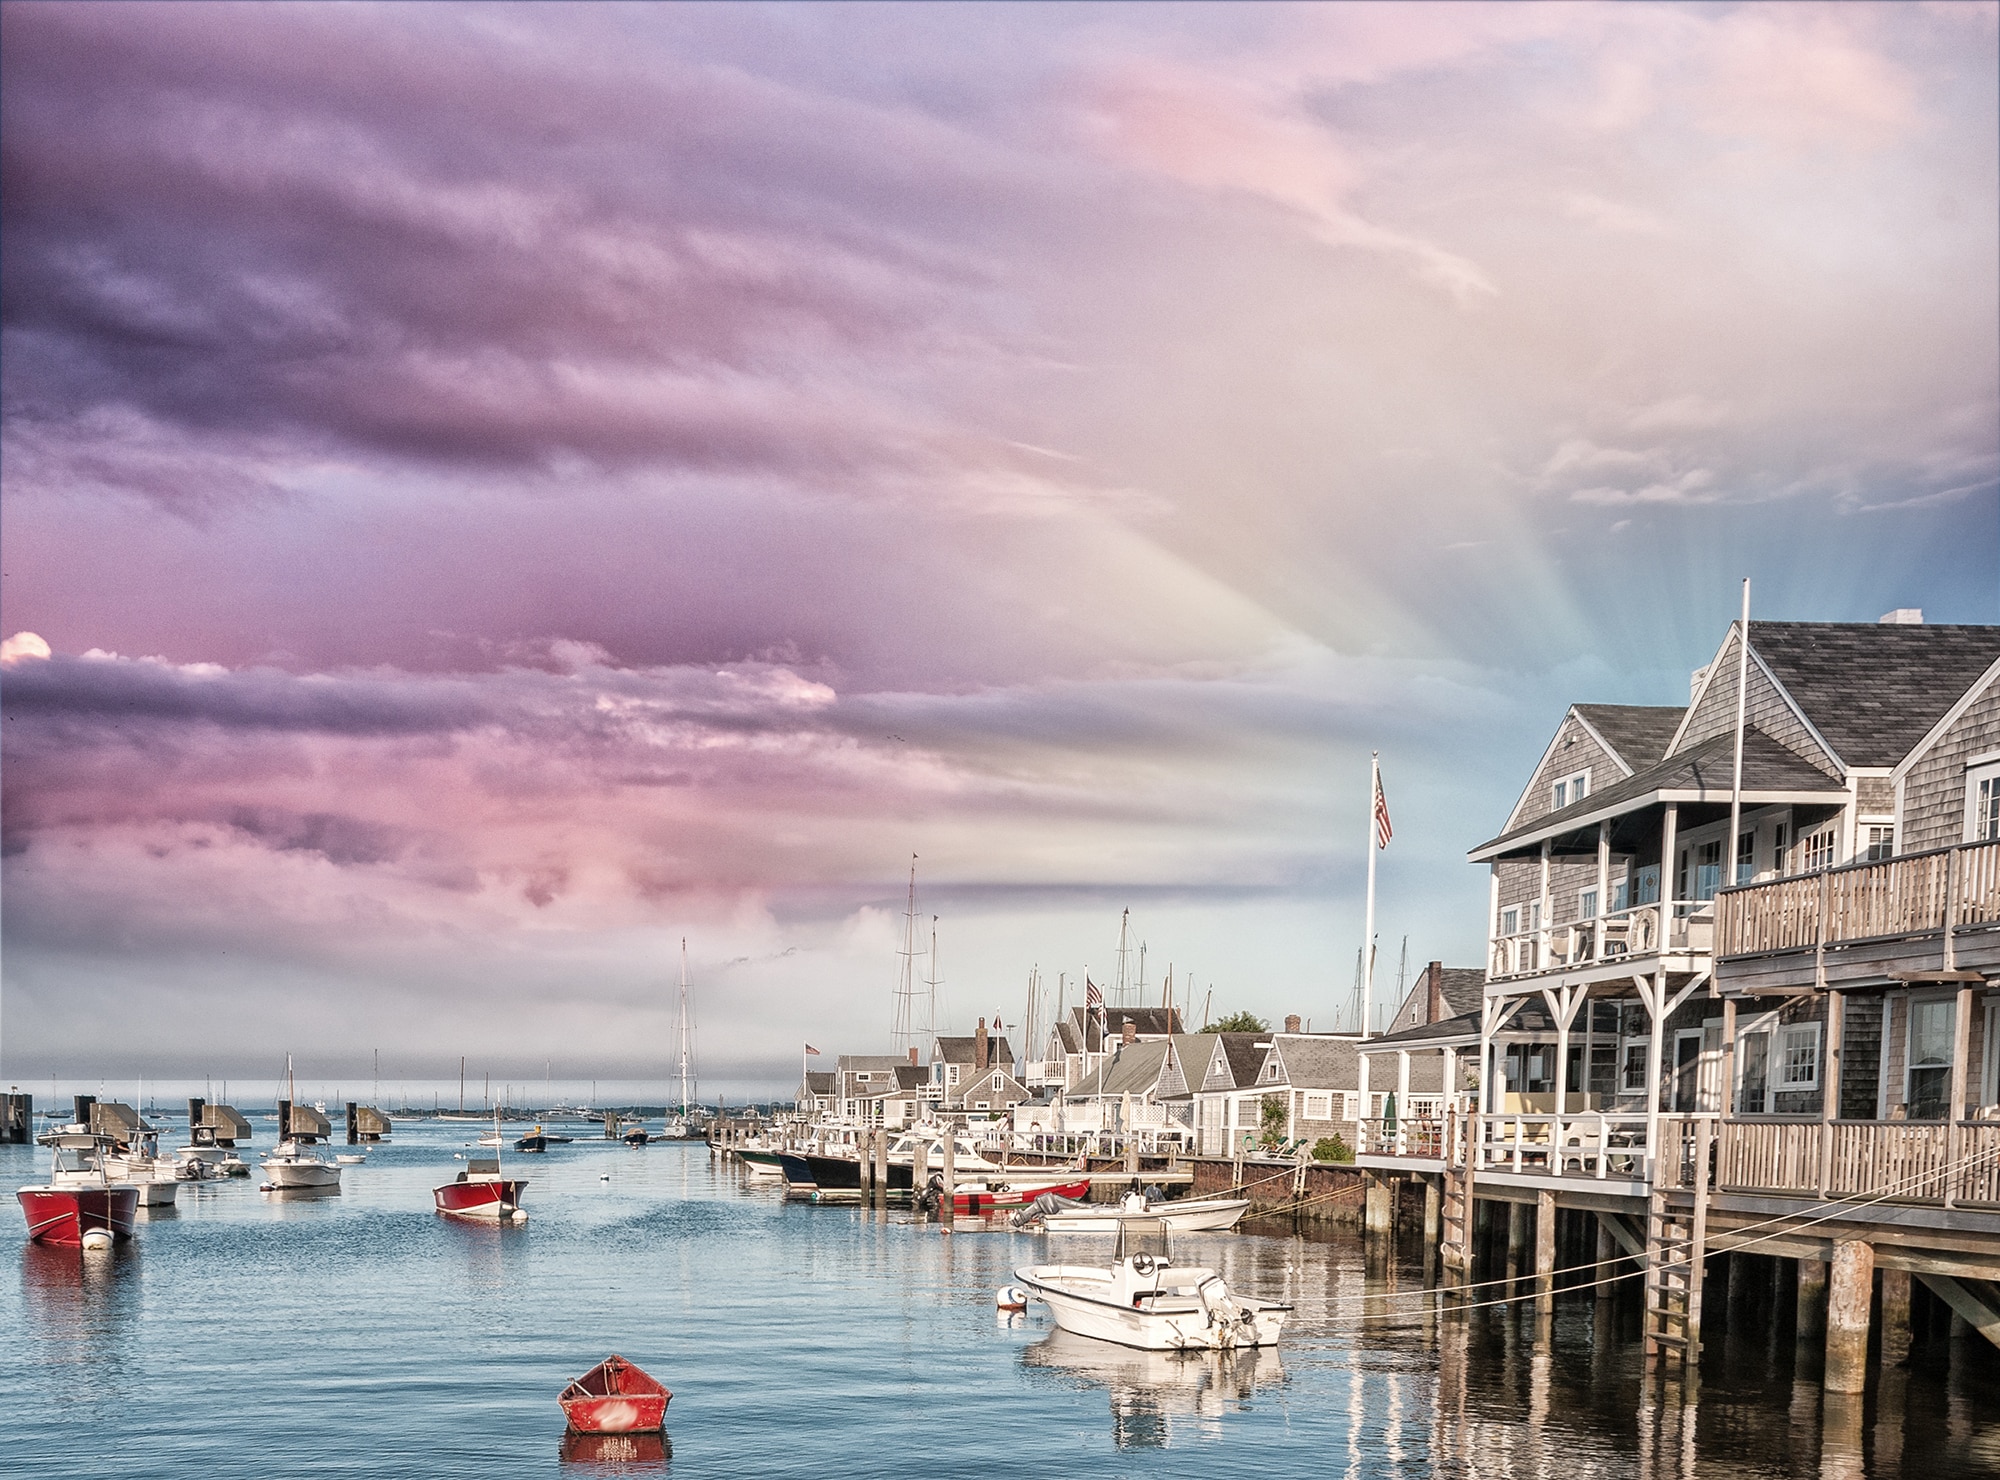 US Islands: Nantucket, Massachusetts